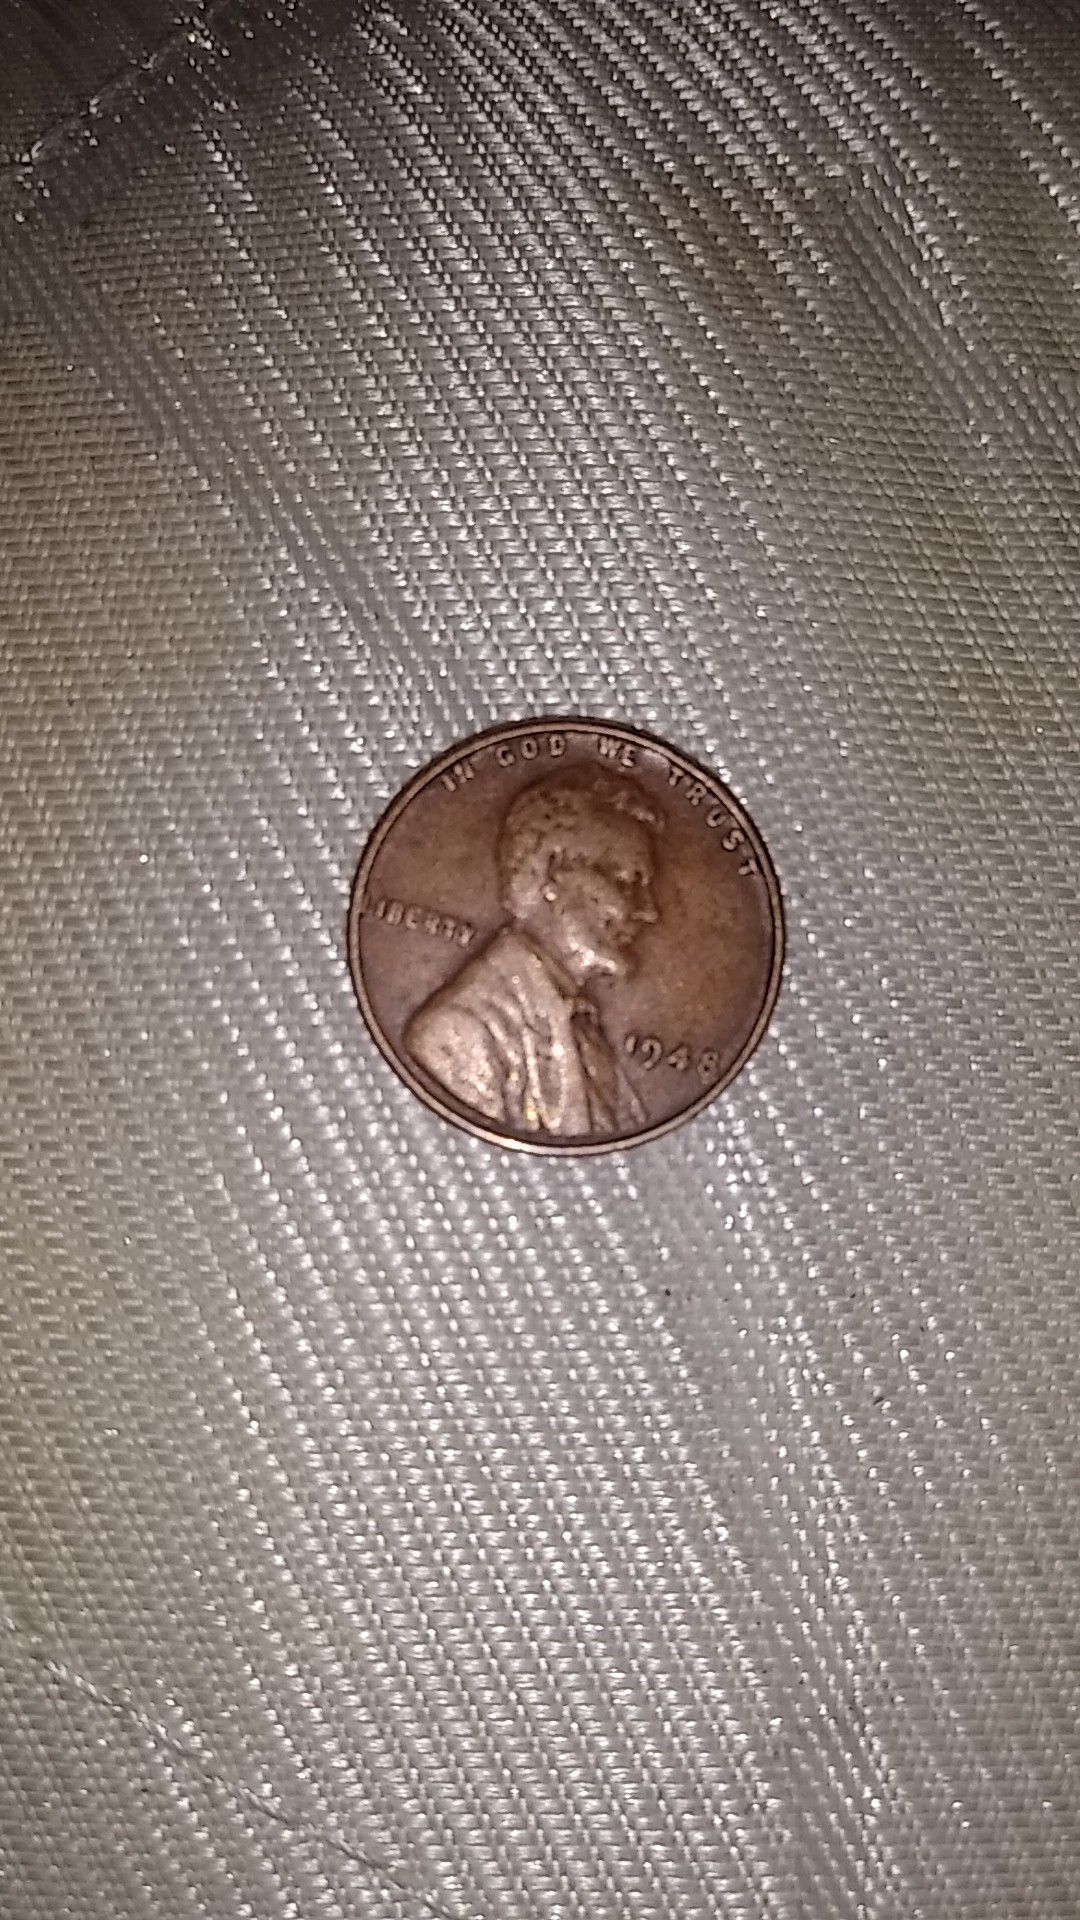 1948 lincon penny